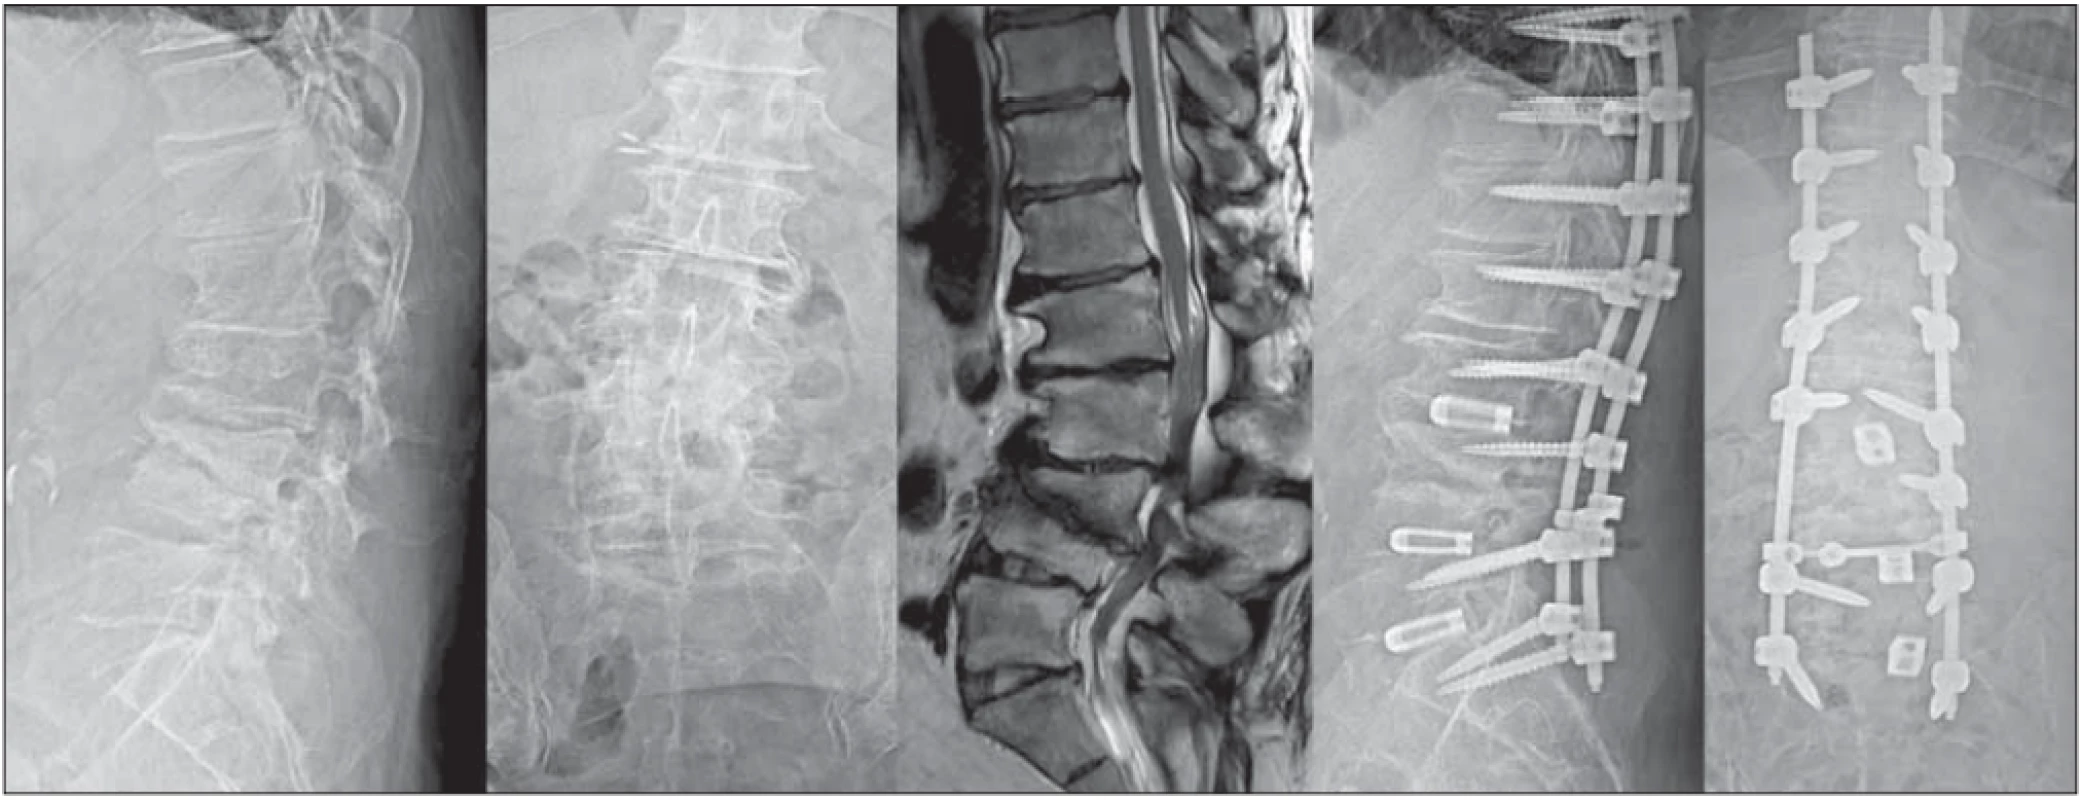  58-ročný pacient s výraznými axiálnymi aj radikulárnymi bolesťami, schopný chôdze iba na krátke vzdialenosti pre klaudikačné
ťažkosti. Grafi cký nález závažnej kyfoskoliózy (dominuje kyfóza) so stenotizáciou spinálneho kanála. Po rozsiahlom dekompresívno-
-stabilizačnom zákroku zmiernenie bolestivého syndrómu.<br>
Fig. 3. 58-year old male patient with major axial and radicular pain, able to walk only short distances due to neurogenic claudications.
Imaging fi ndings showed severe kyphoscoliosis (dominantly kyphosis) with spinal stenosis. After extensive decompression and stabilization, there was pain relief.